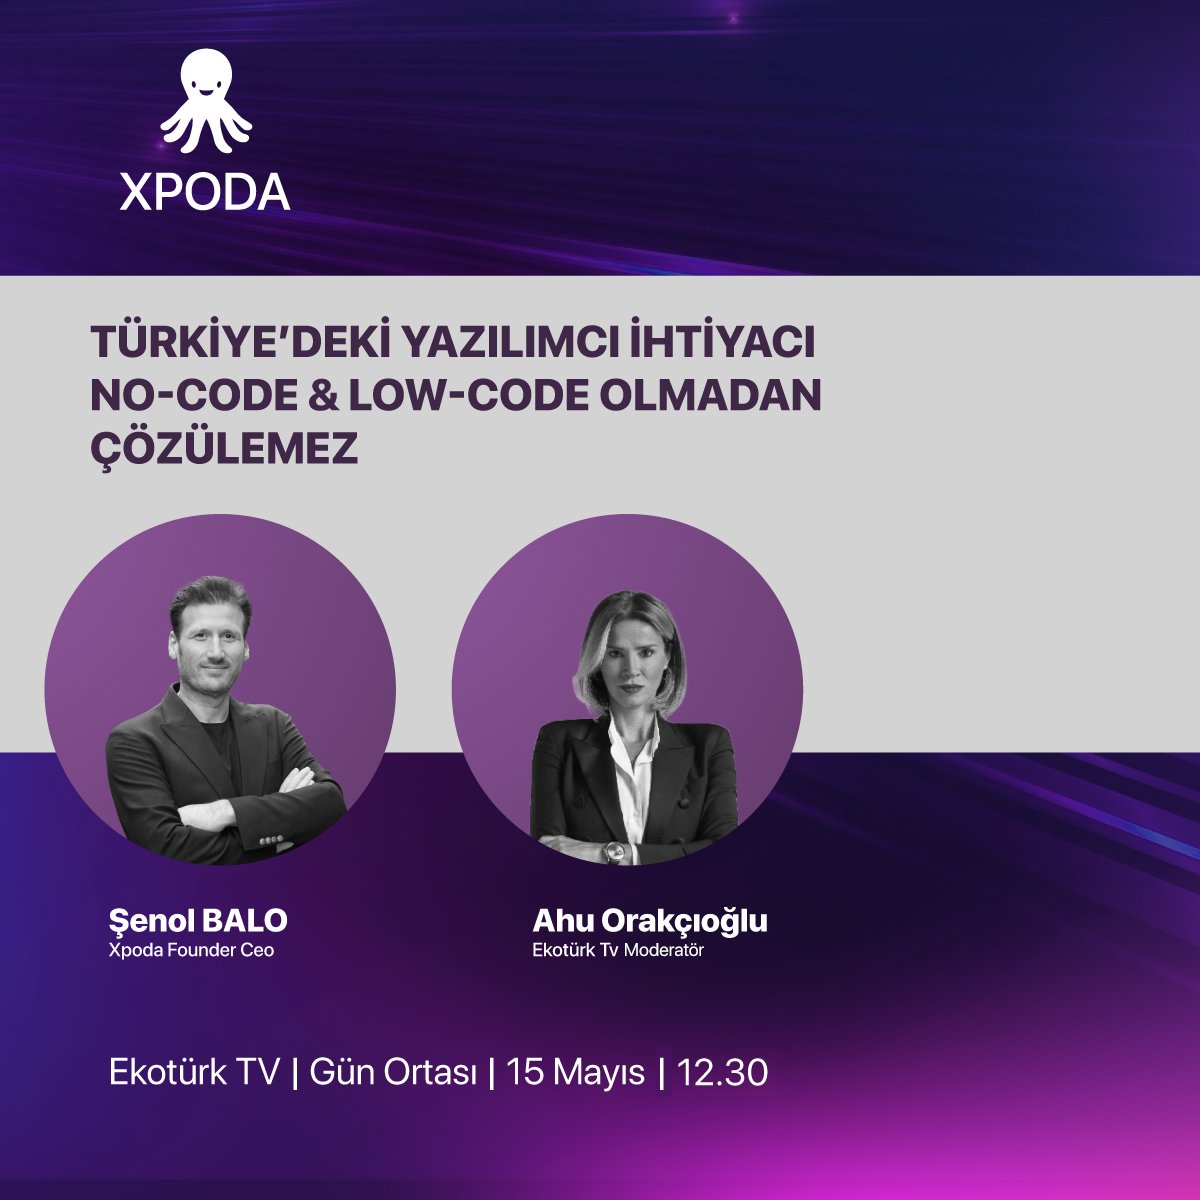 Xpoda CEO'muz Şenol Balo, bugün saat 12.30'da Ekotürk TV'de Gün Ortası programına konuk olacak. Türkiye'nin ihtiyaç duyduğu büyük yazılımcı ihtiyacının ve no-code & low-code teknolojilerinin bu açığı ne kadar hızlı kapatabileceğinin konuşulacağı bu programı sakın kaçırmayın!